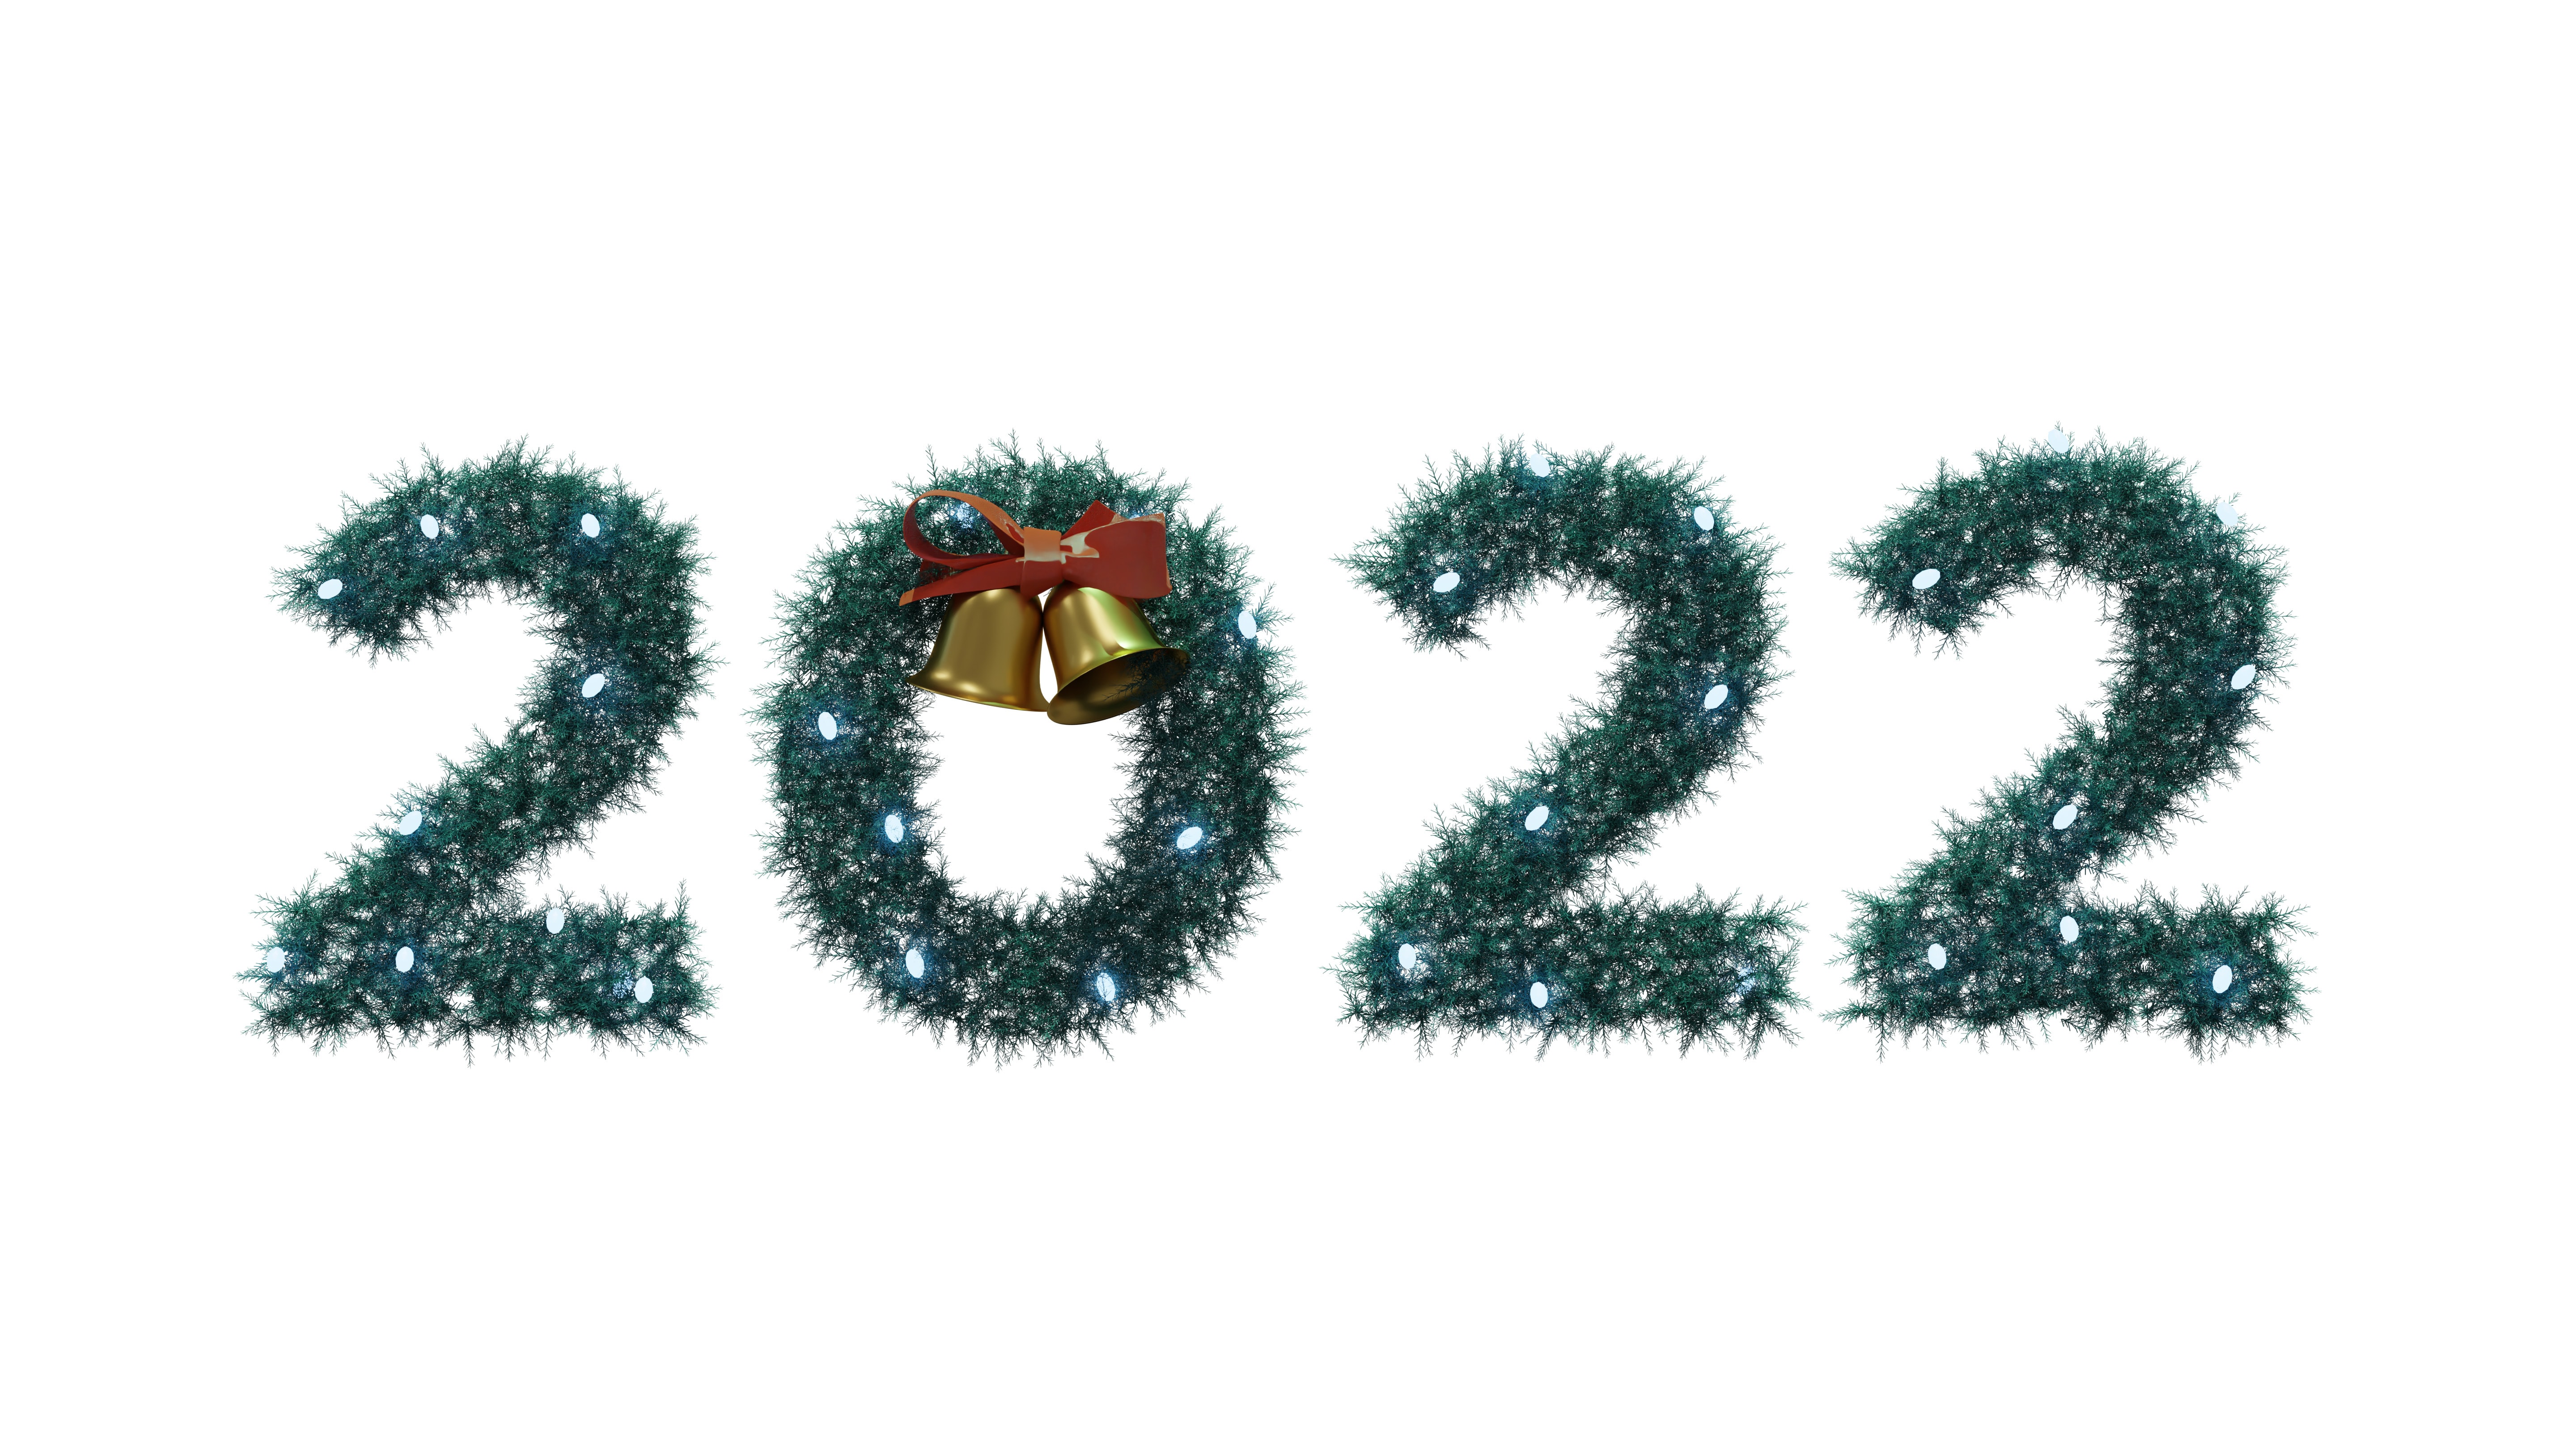 Hãy tưởng tượng một màn hình máy tính với hình nền Giáng sinh 2022 tuyệt đẹp, với cây thông rực rỡ, một ngôi nhà được trang trí lung linh và các quà tặng xinh xắn. Đơn giản, nó là cảm giác ấm áp và đầy niềm vui. Nhấn vào ảnh để tận hưởng tinh thần Giáng sinh tự động tràn đầy.